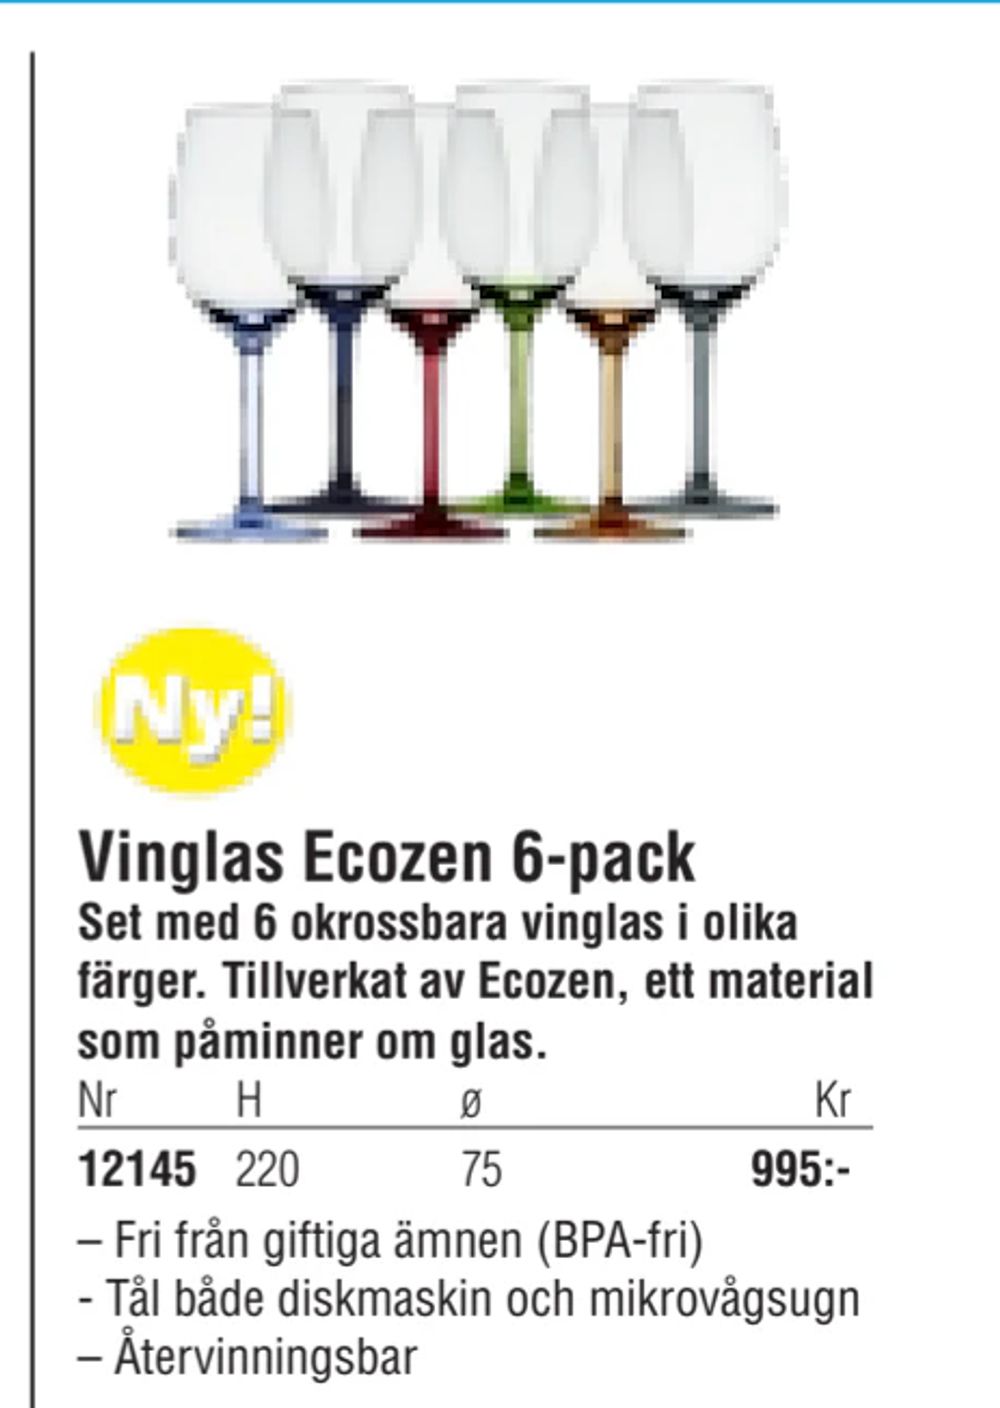 Erbjudanden på Vinglas Ecozen 6-pack från Erlandsons Brygga för 995 kr